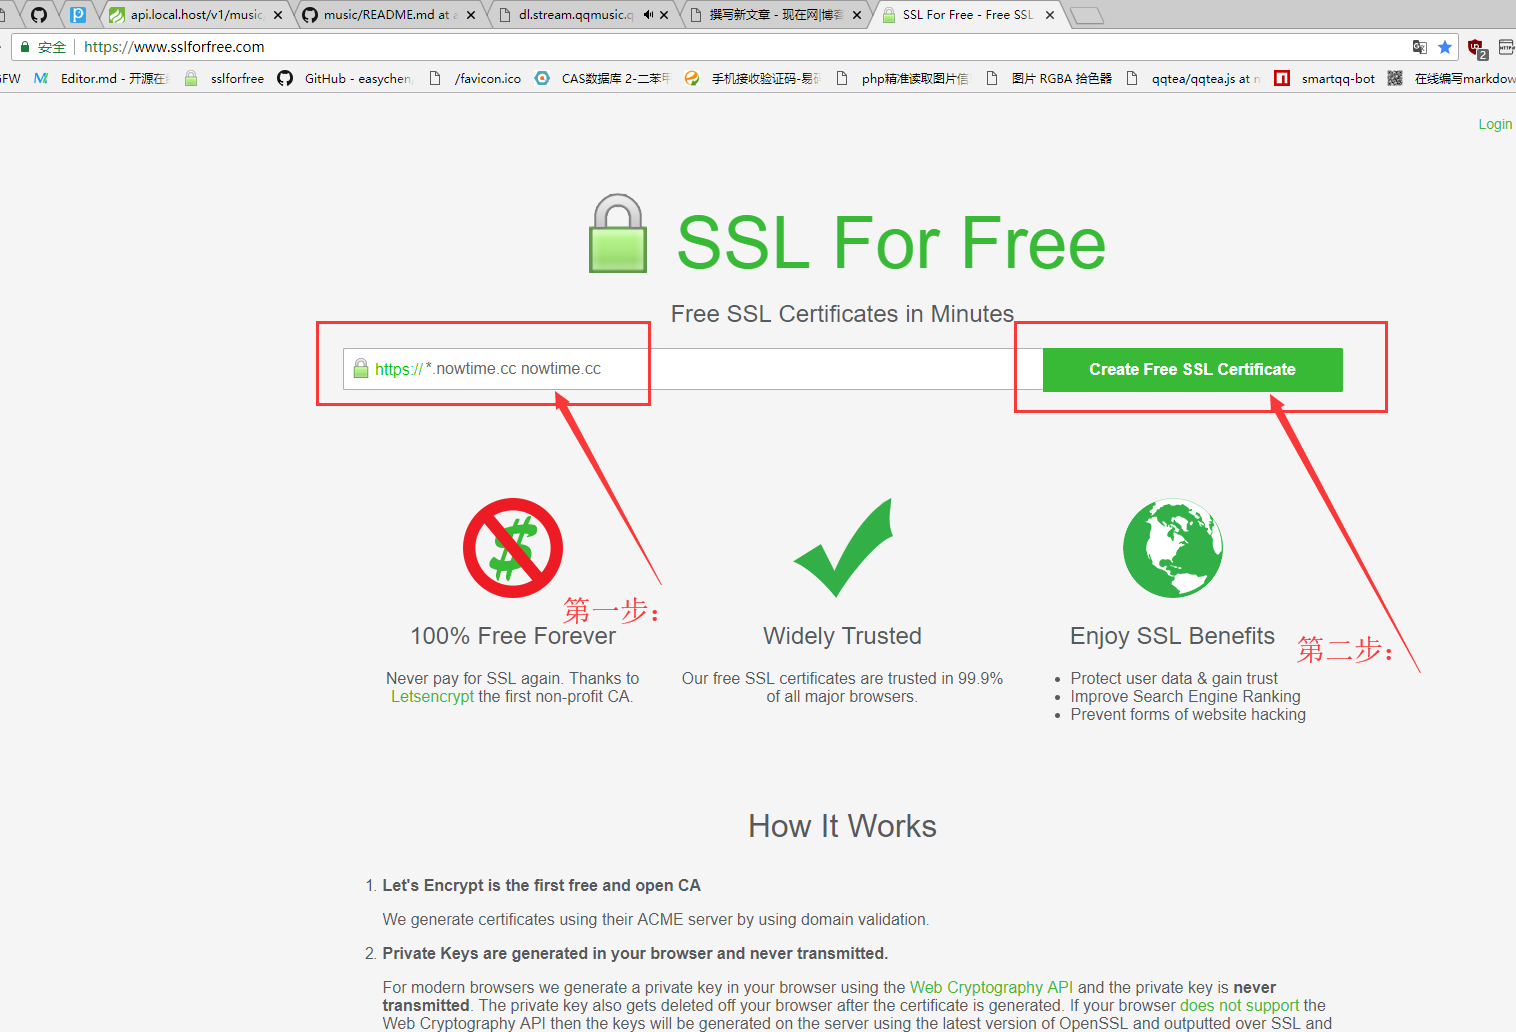 确定你要申请泛域名SSL 证书的域名，如nowtime.cc，那么就在表单里填*.nowtime.cc nowtime.cc，然后点击Creat Free SSL Certificate按钮.png